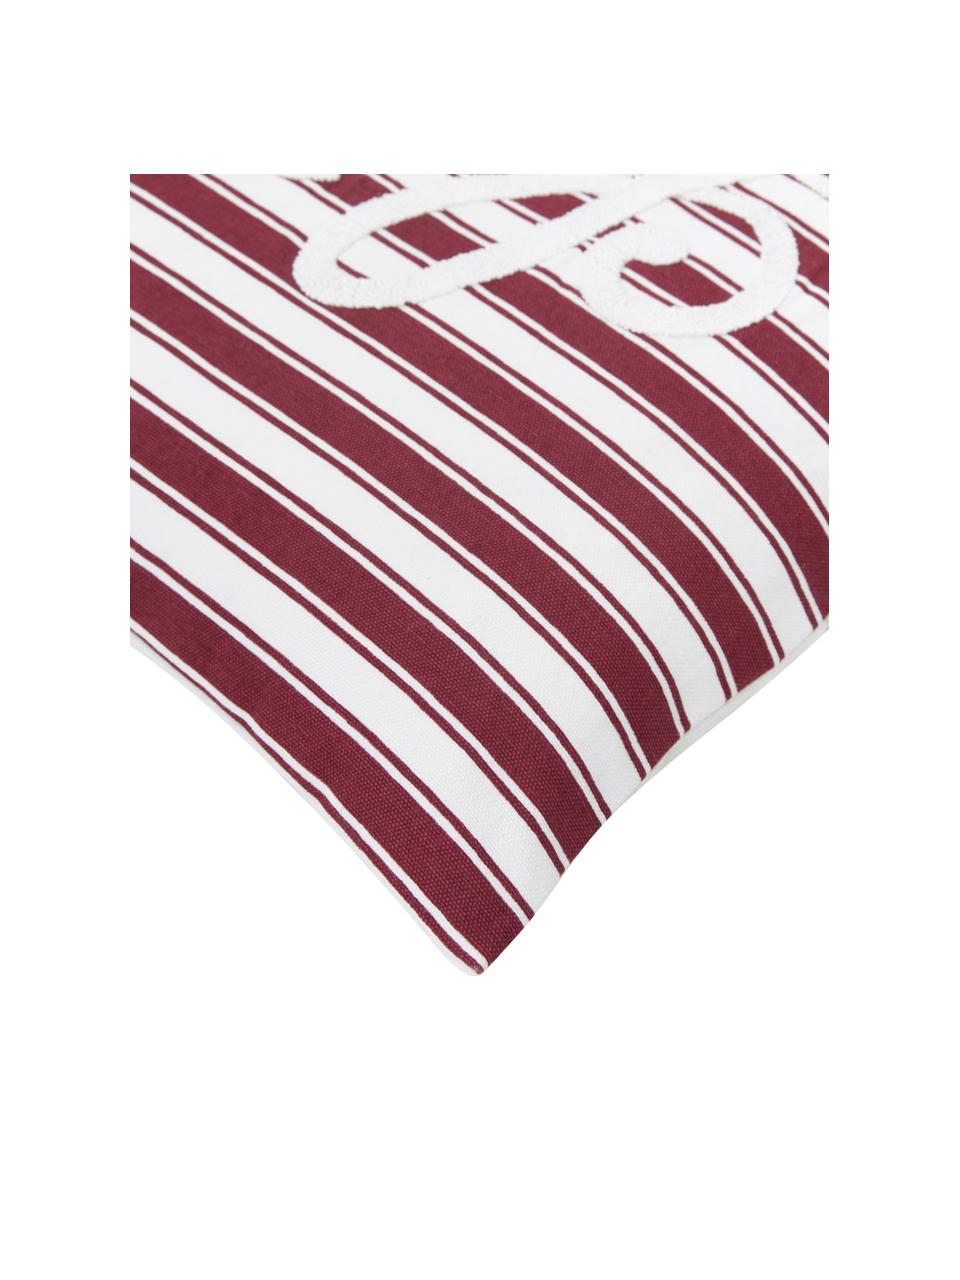 Poszewka na poduszkę z haftem Let it snow, 100% bawełna, Czerwony, S 45 x D 45 cm